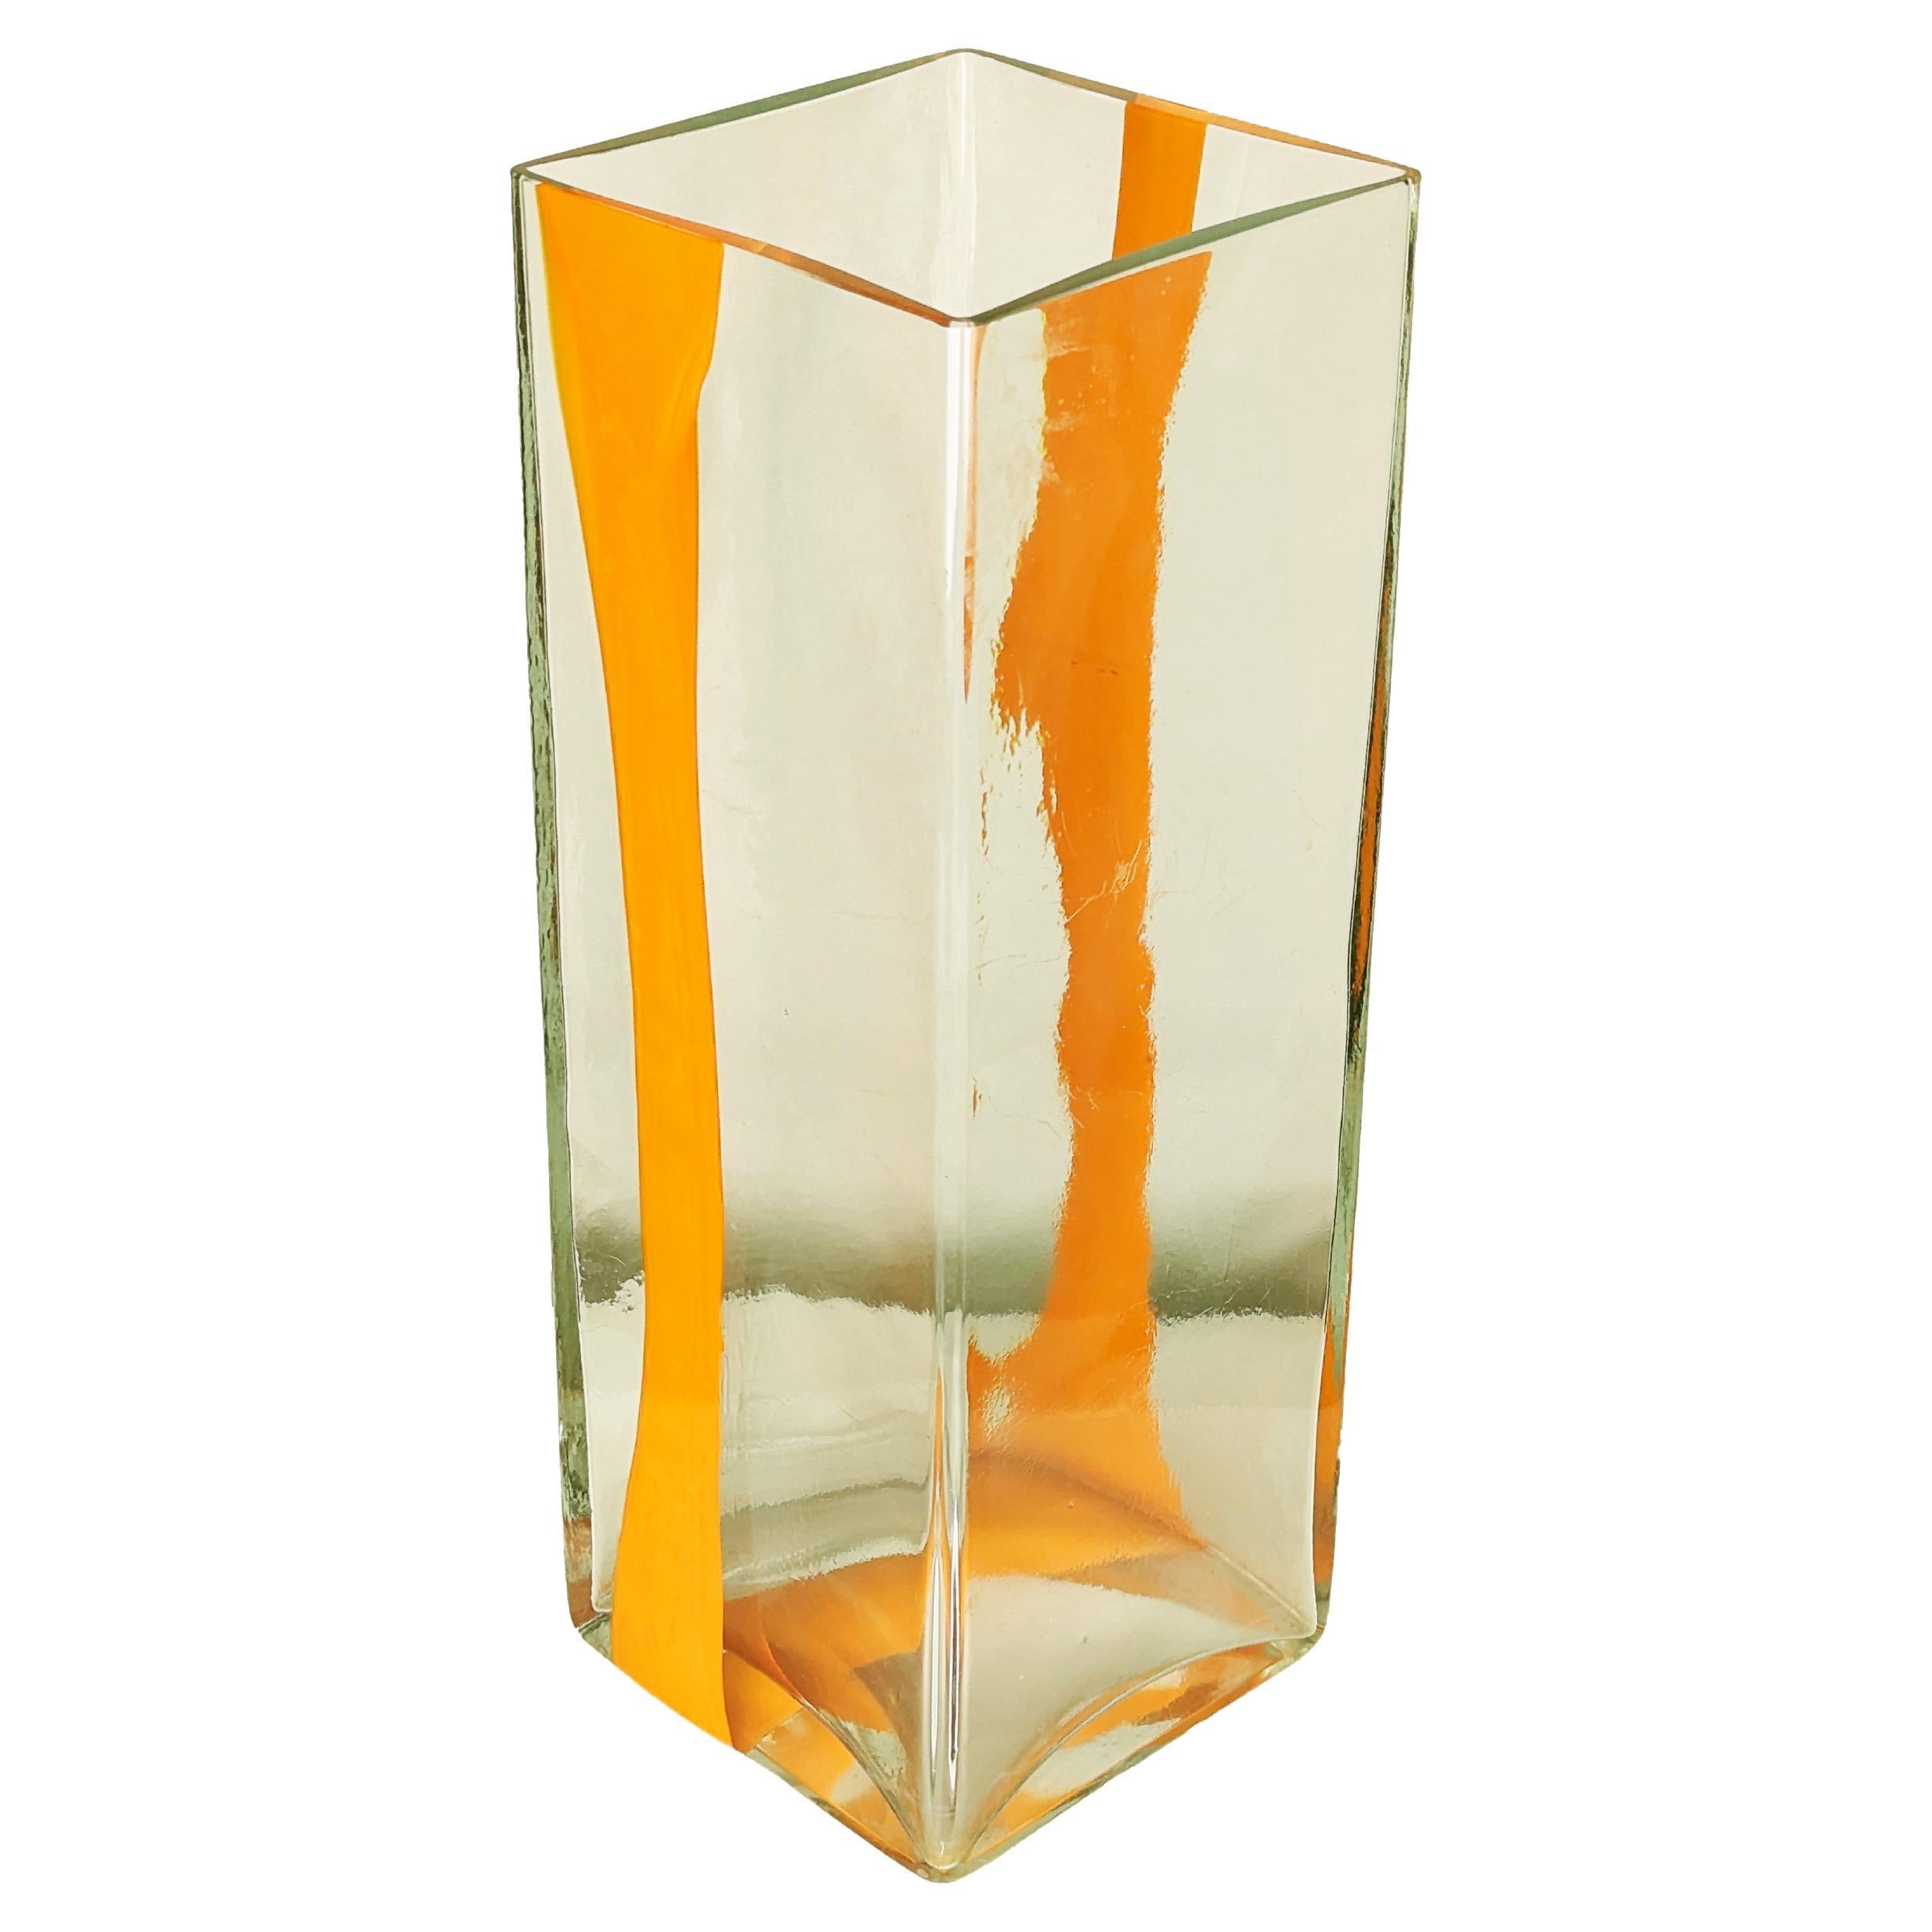 Grand porte-vase/parapluie en verre de Murano orange et transparent des années 1970 par Cardin pour Venini